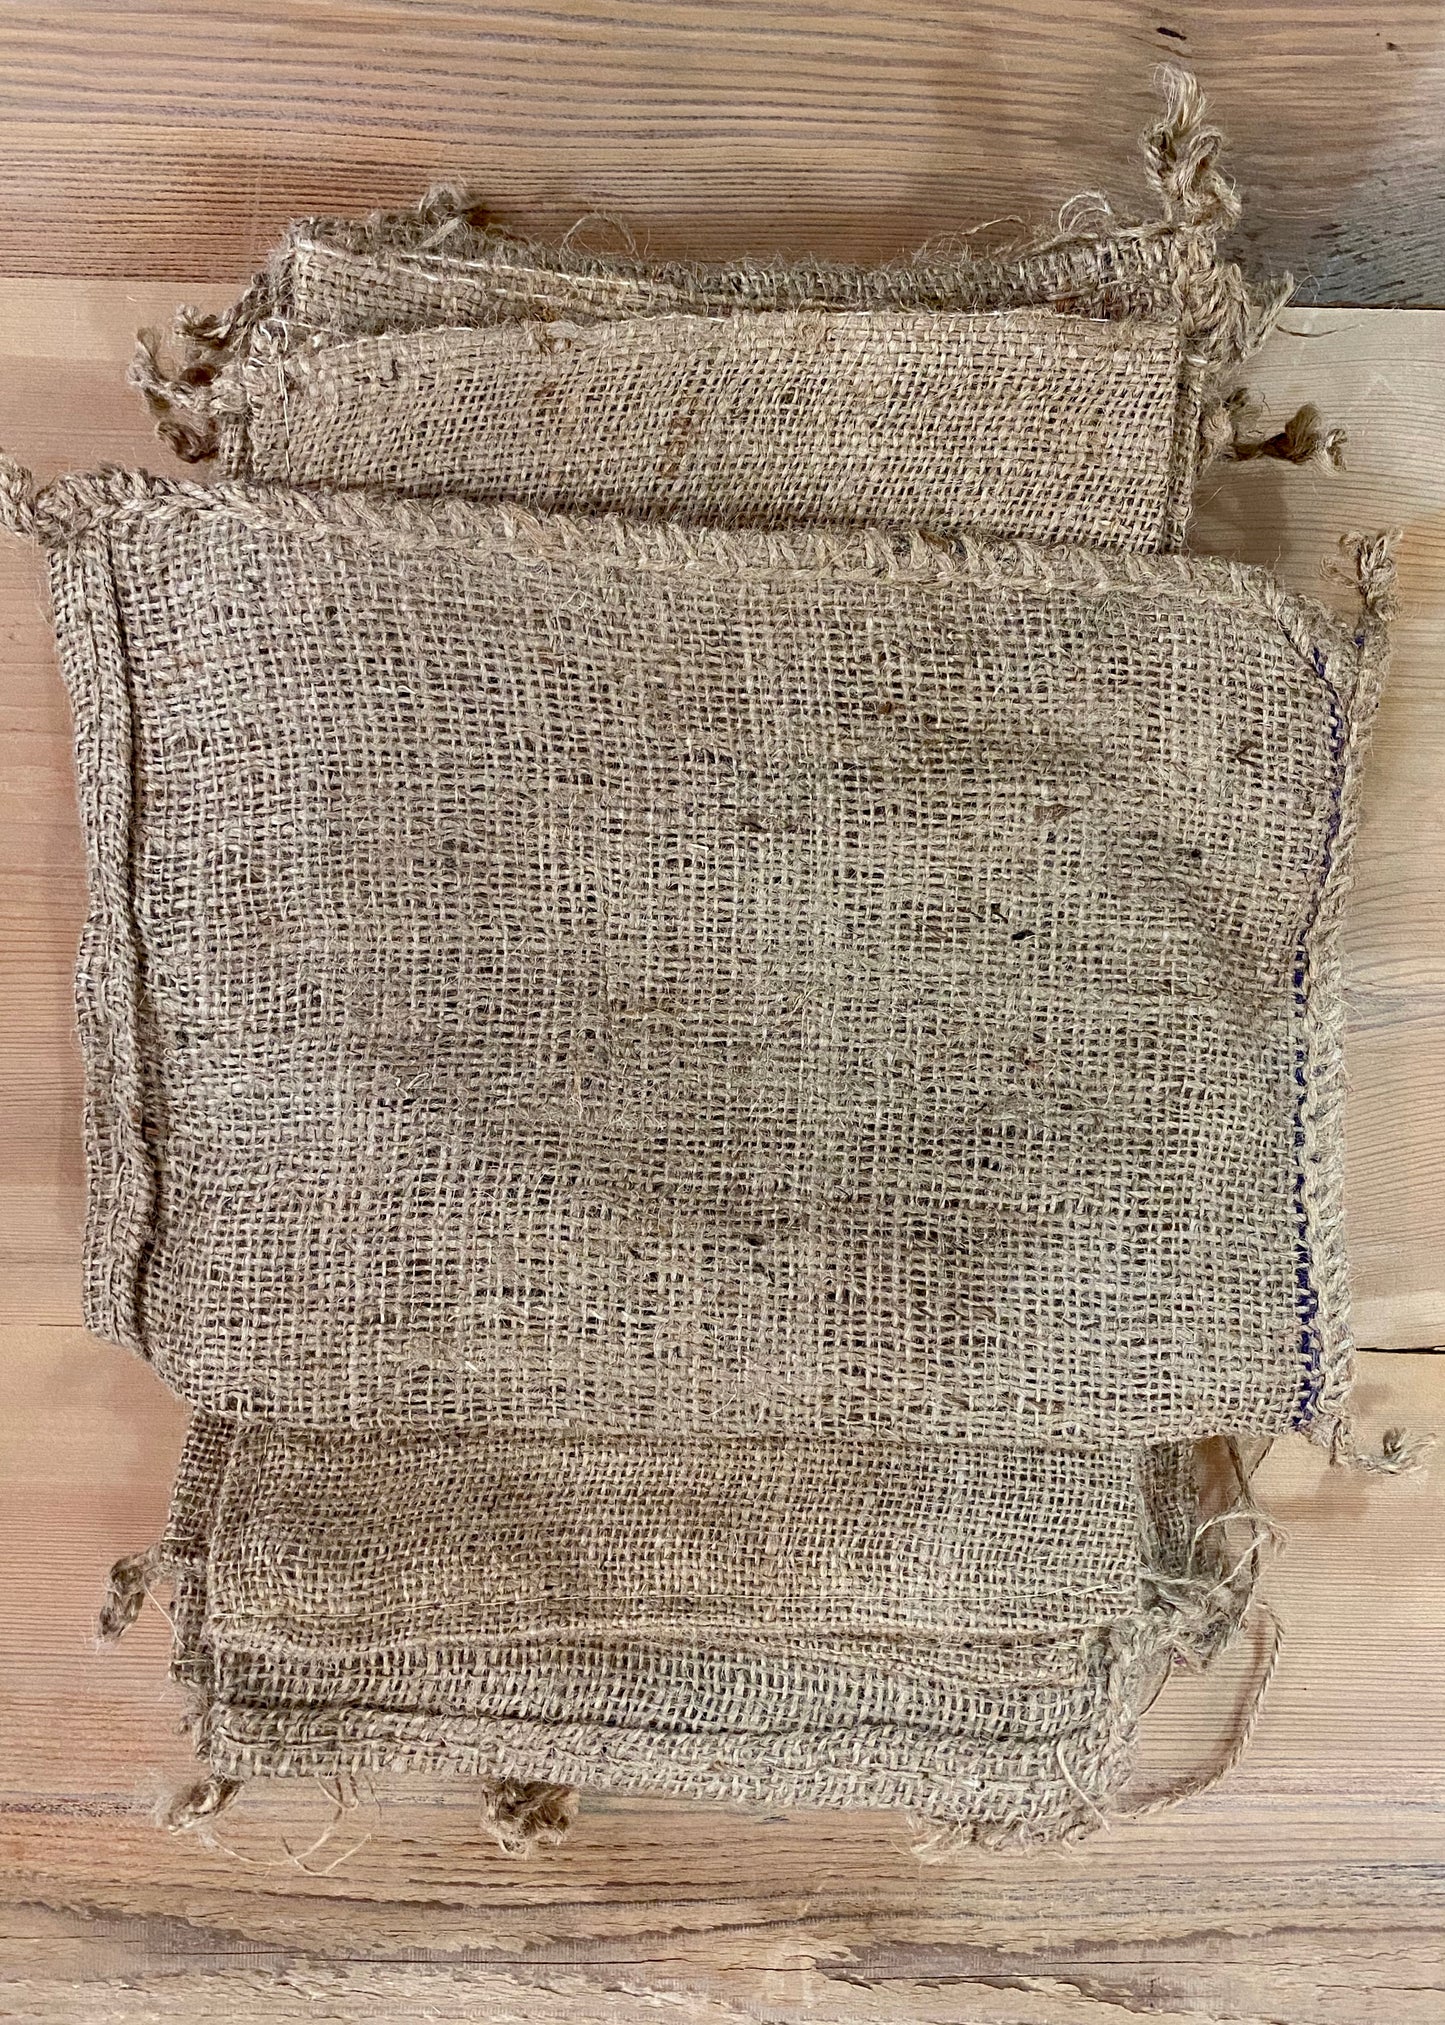 Small Fabric Drawstring Burlap Bag